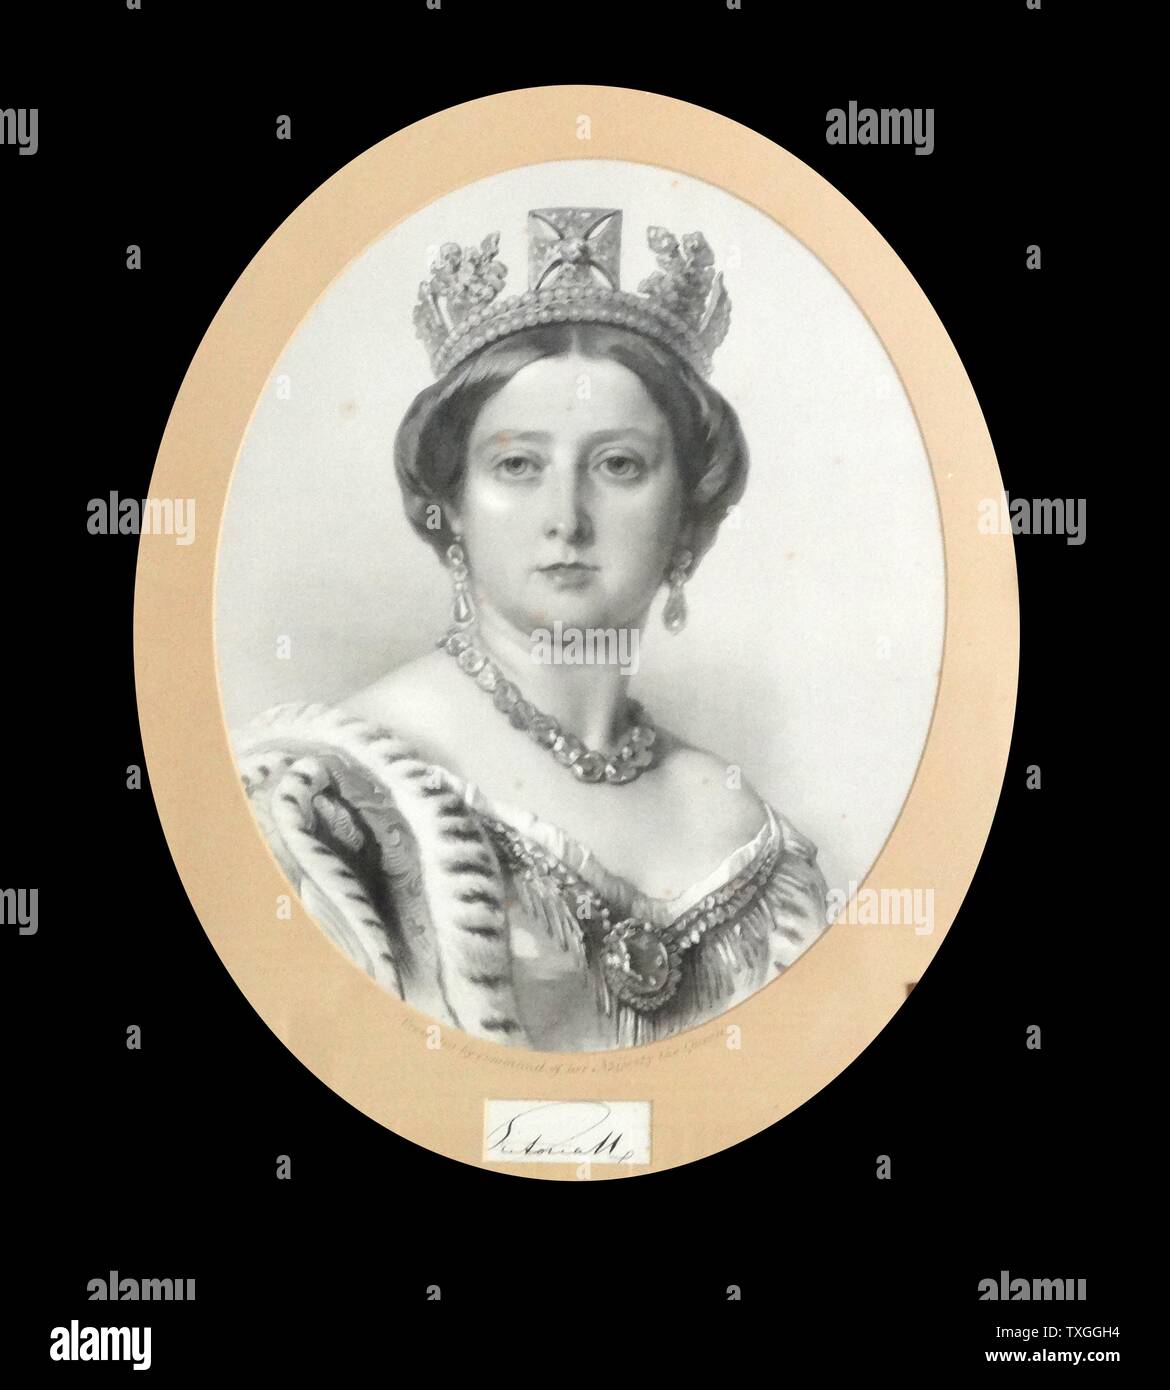 Portrait d'une jeune reine Victoria (1819-1901) Reine du Royaume-Uni de Grande-Bretagne et d'Irlande. Date de 1838 Banque D'Images